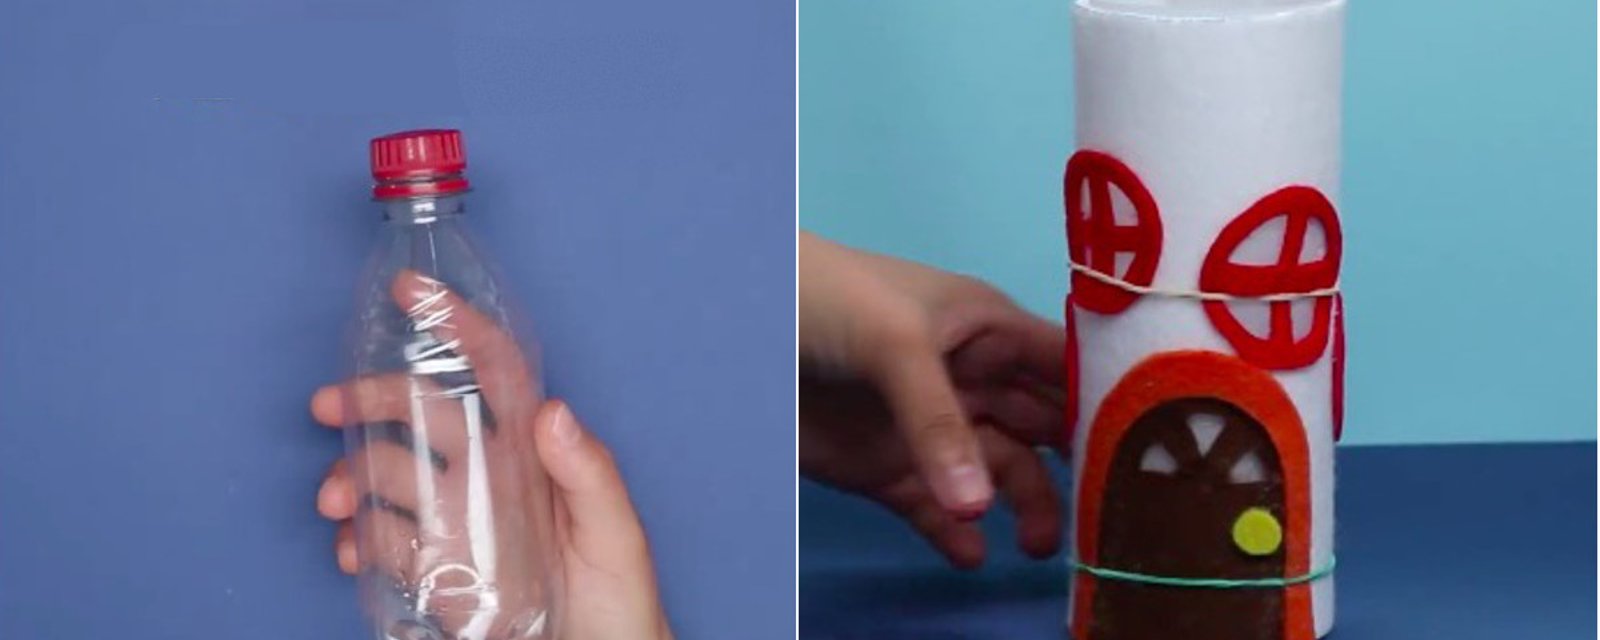 Apprenez à bricoler une veilleuse maison de fée, à partir d'une bouteille en plastique vide! 